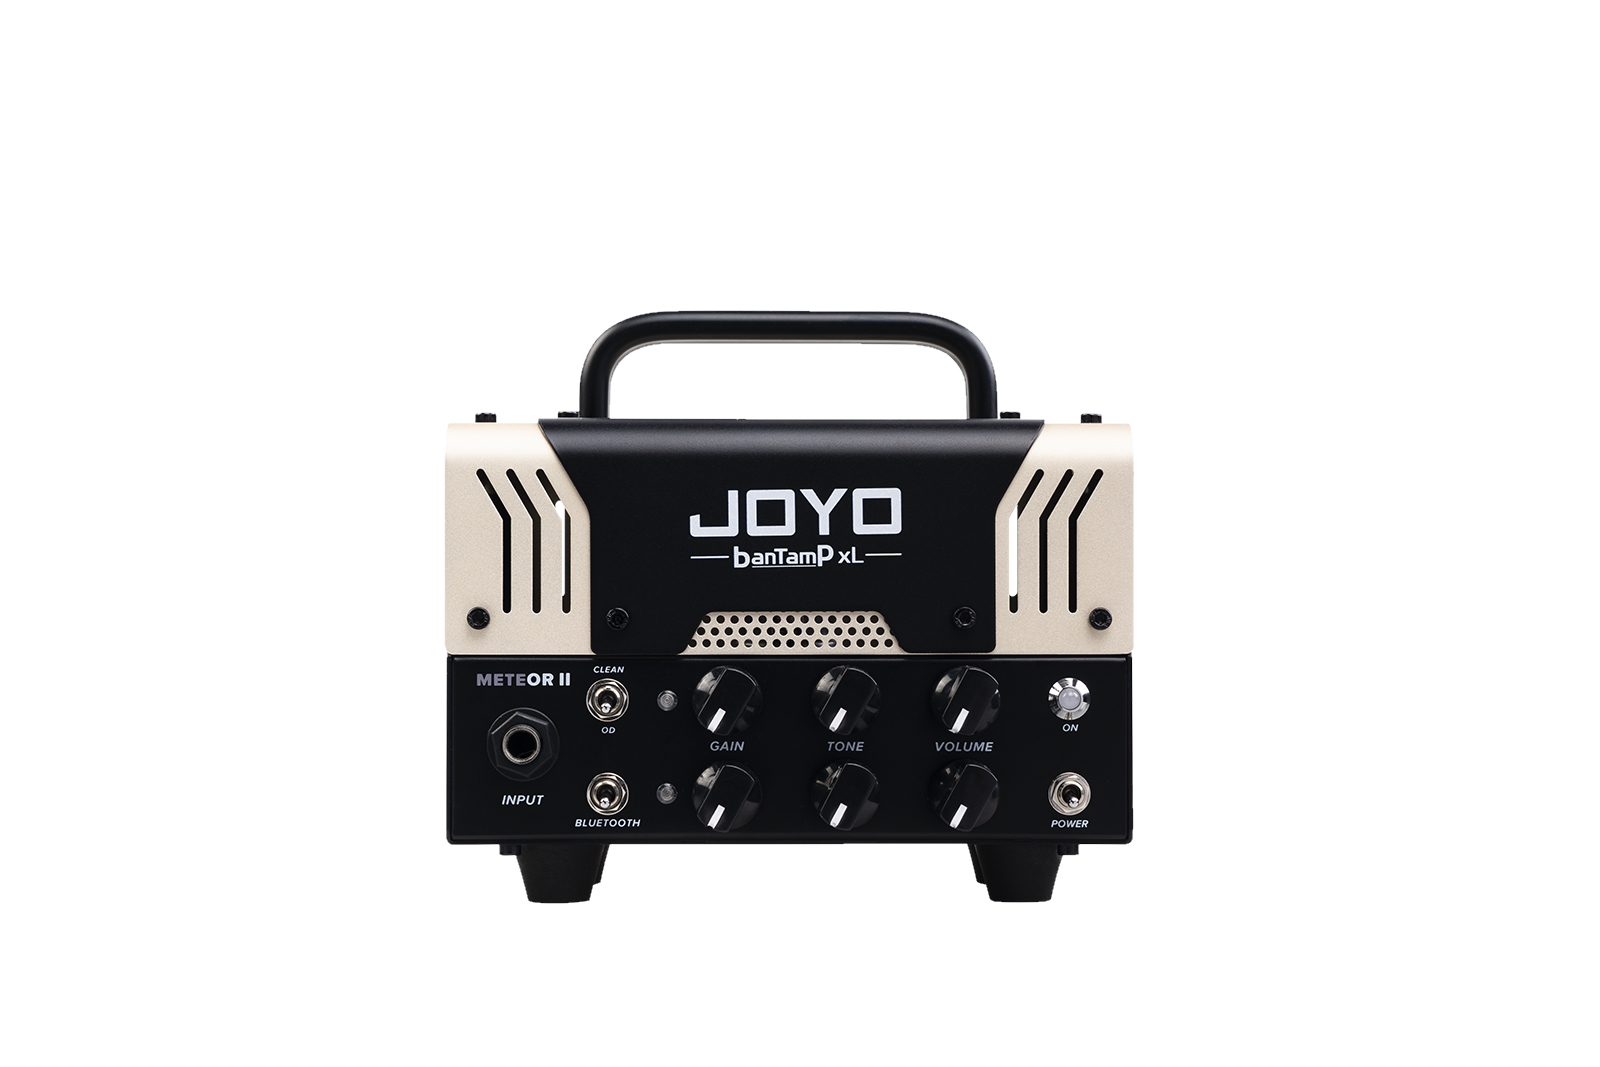 Гитарные усилители Joyo BanTamP XL METEOR-II гитарные усилители peavey invective mh